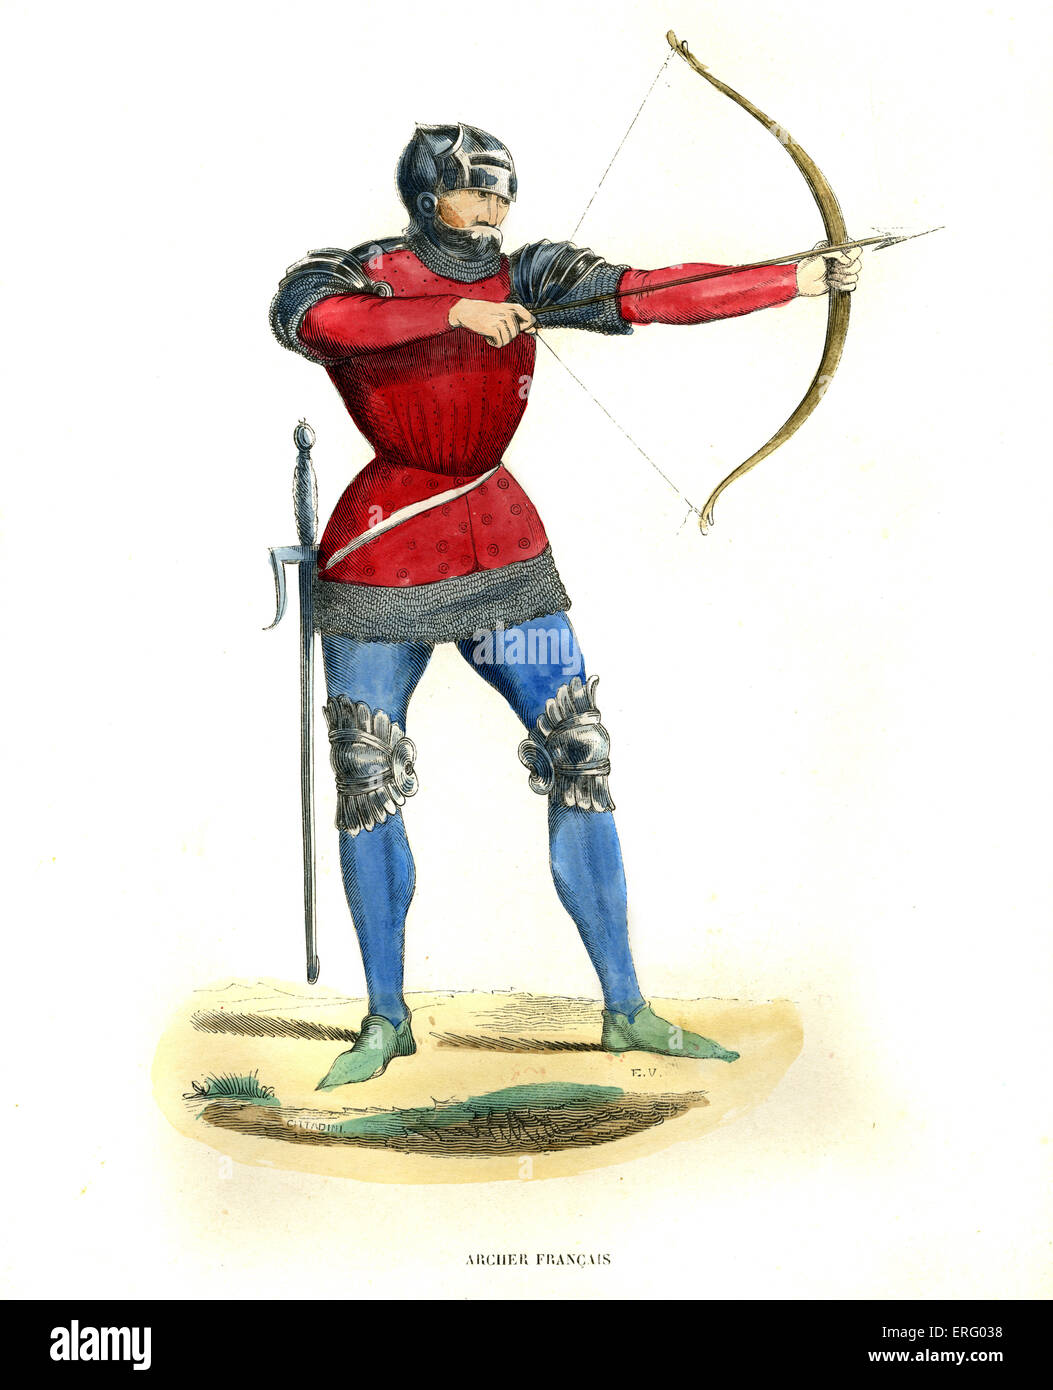 Französischer Bogenschütze im Mittelalter mit Pfeil und Bogen mit Rüstung, Knie, Schultern und Kopf zu schützen.  Trägt ein Schwert an der Hüfte. Stockfoto